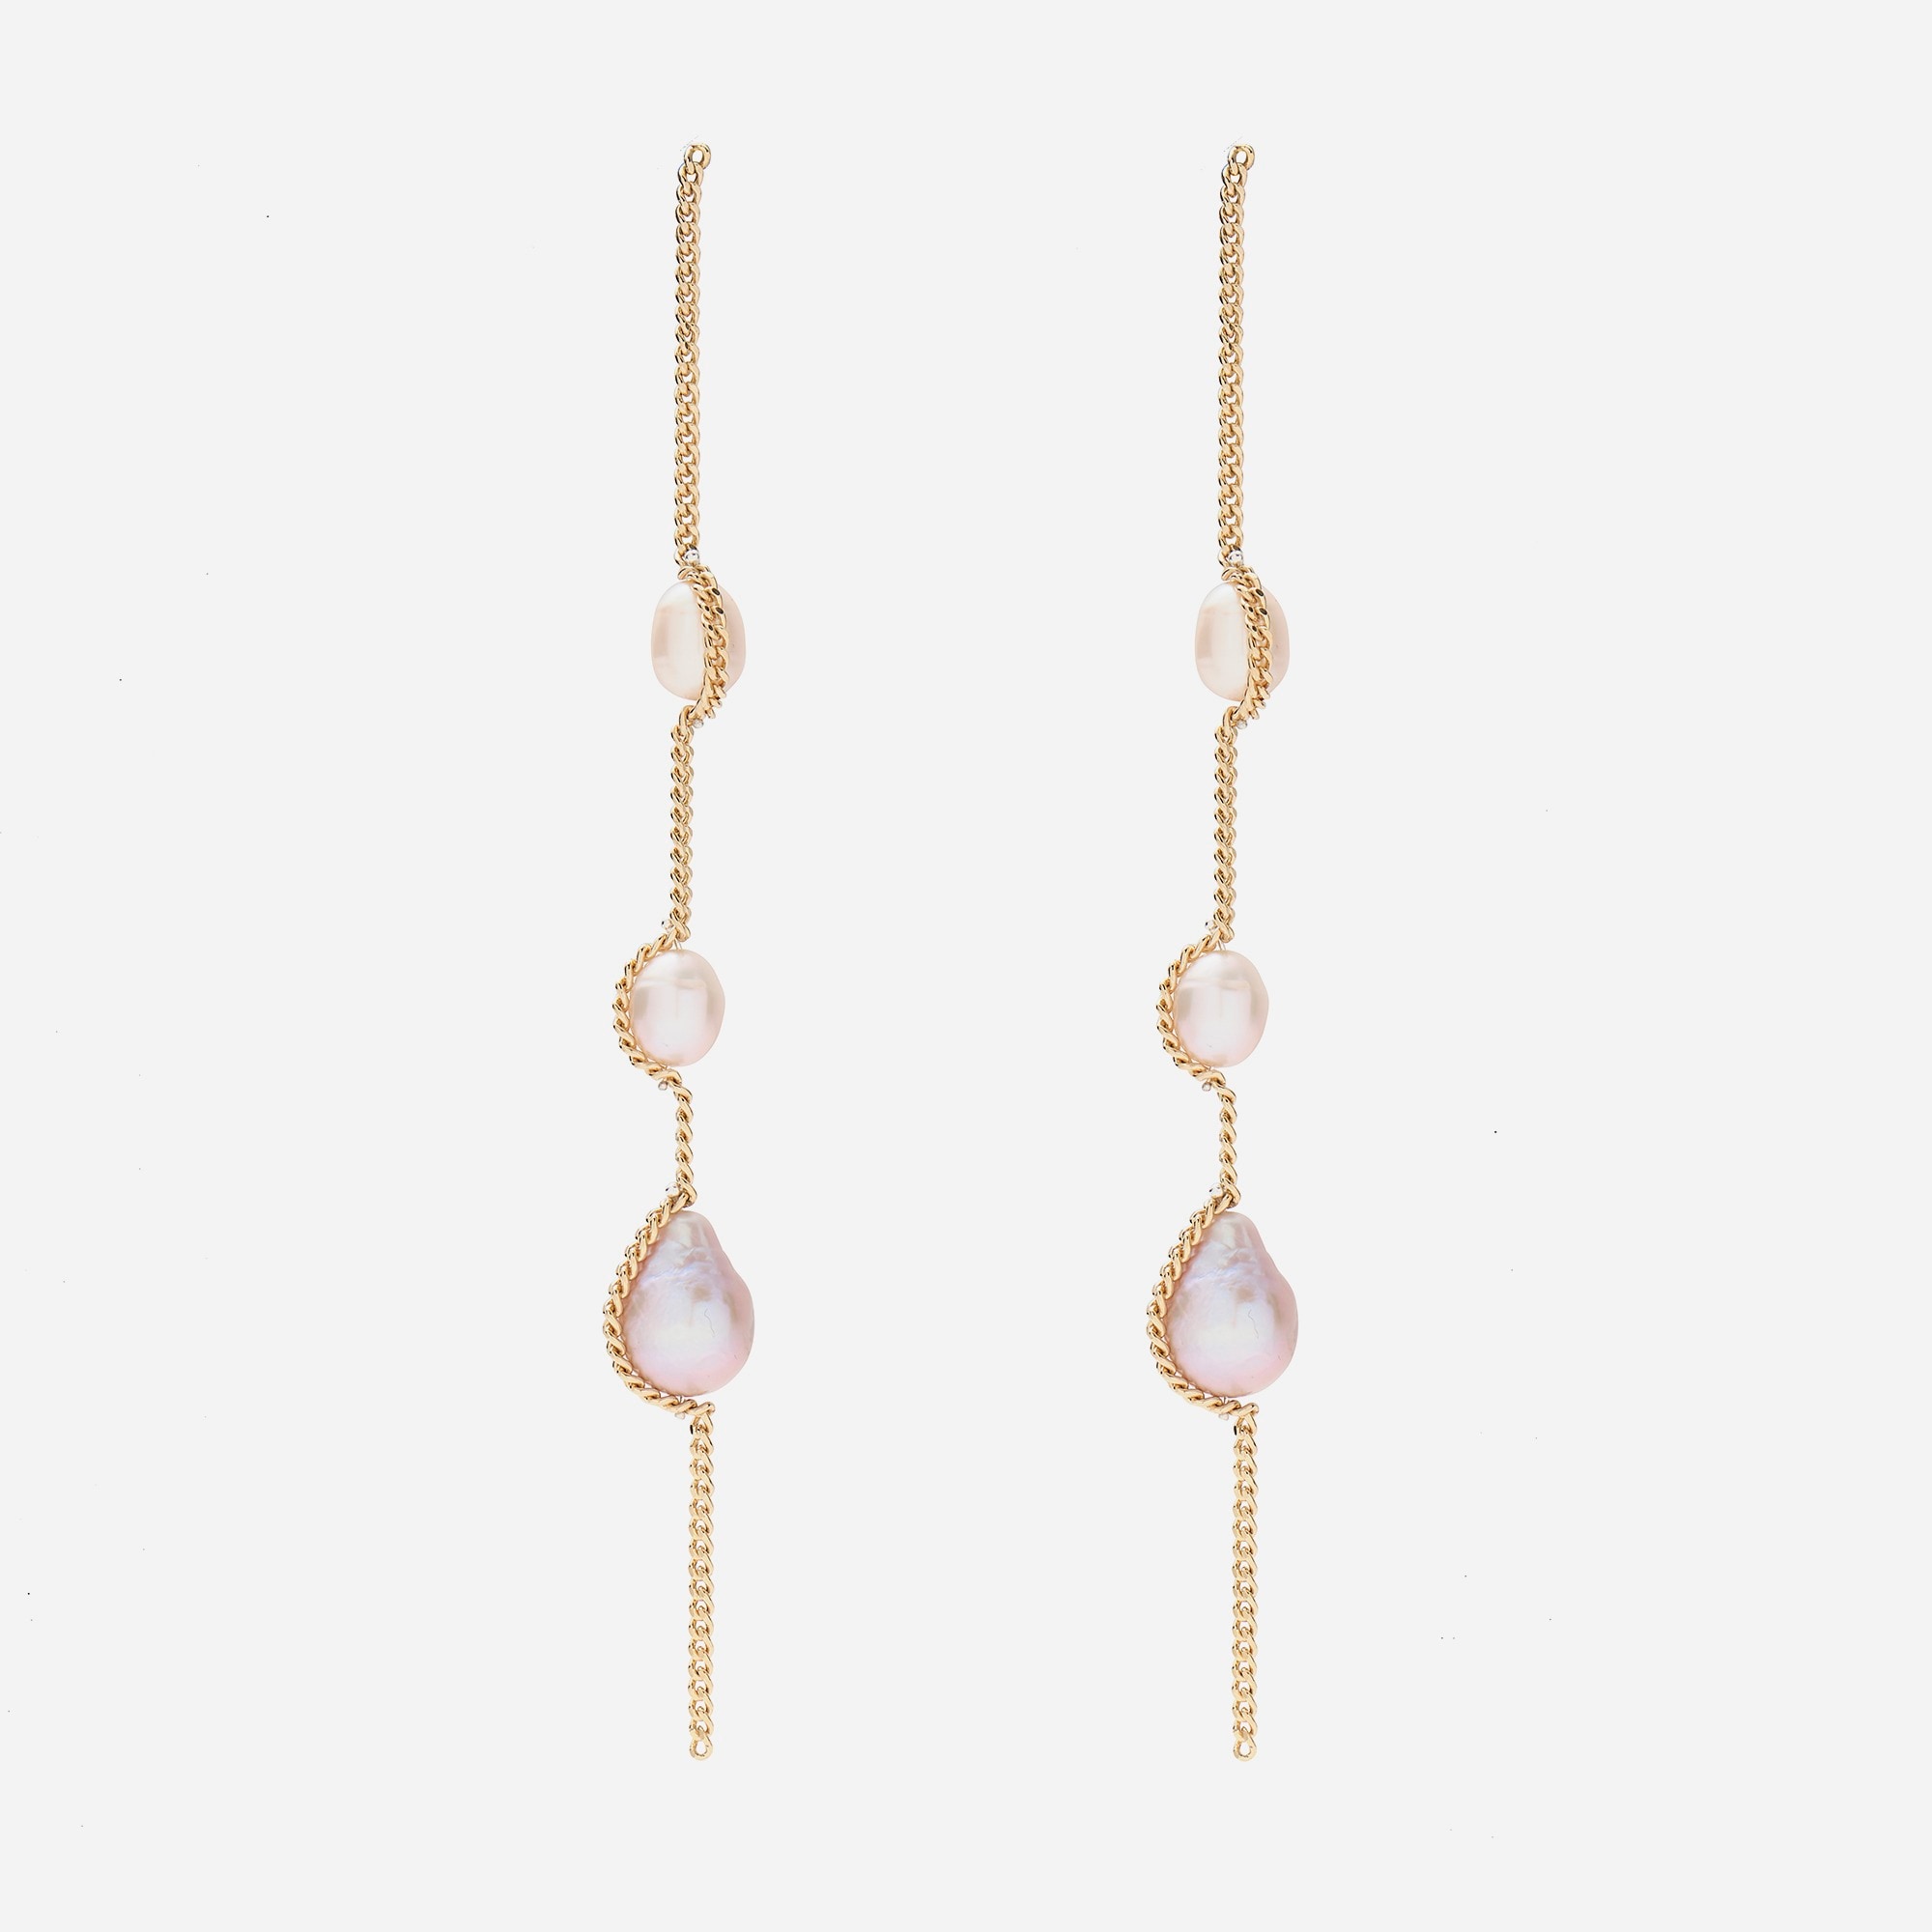  Lady Grey threaded pearl earrings